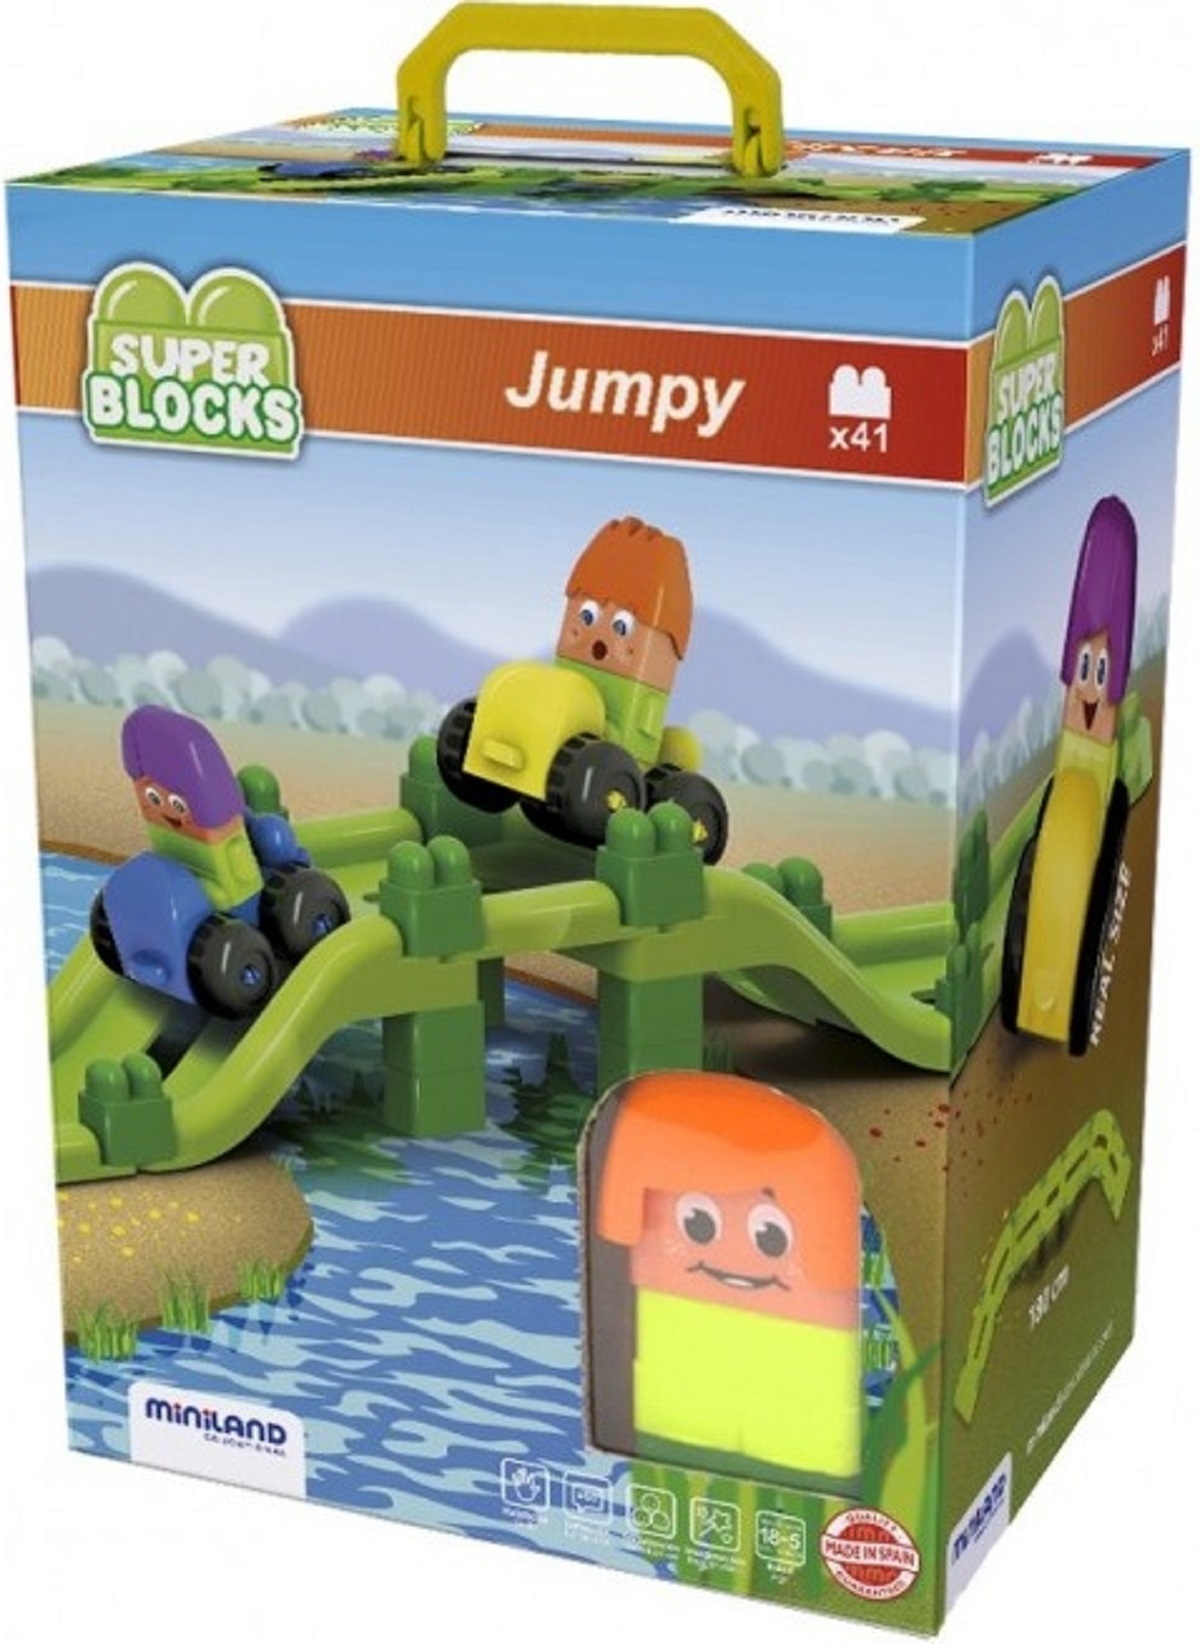 Super Blocks, Jumpy